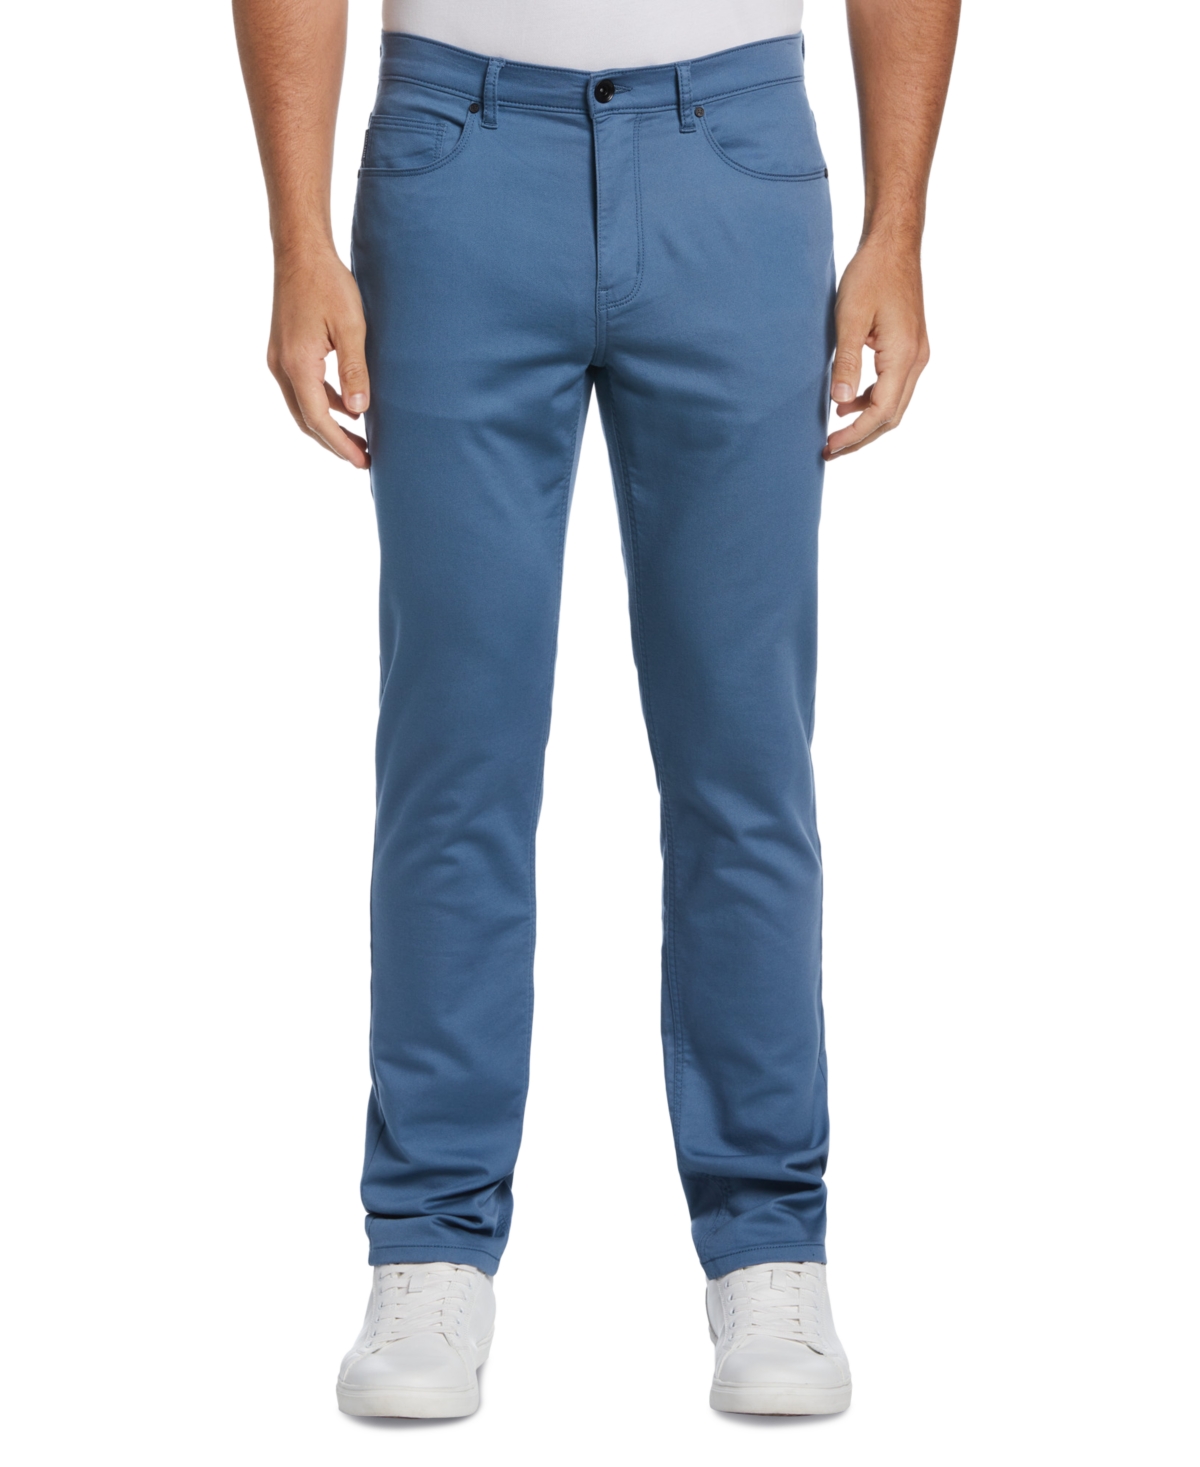 Men's Slim-Fit Stretch Knit 5-Pocket Pants - Copen Blue